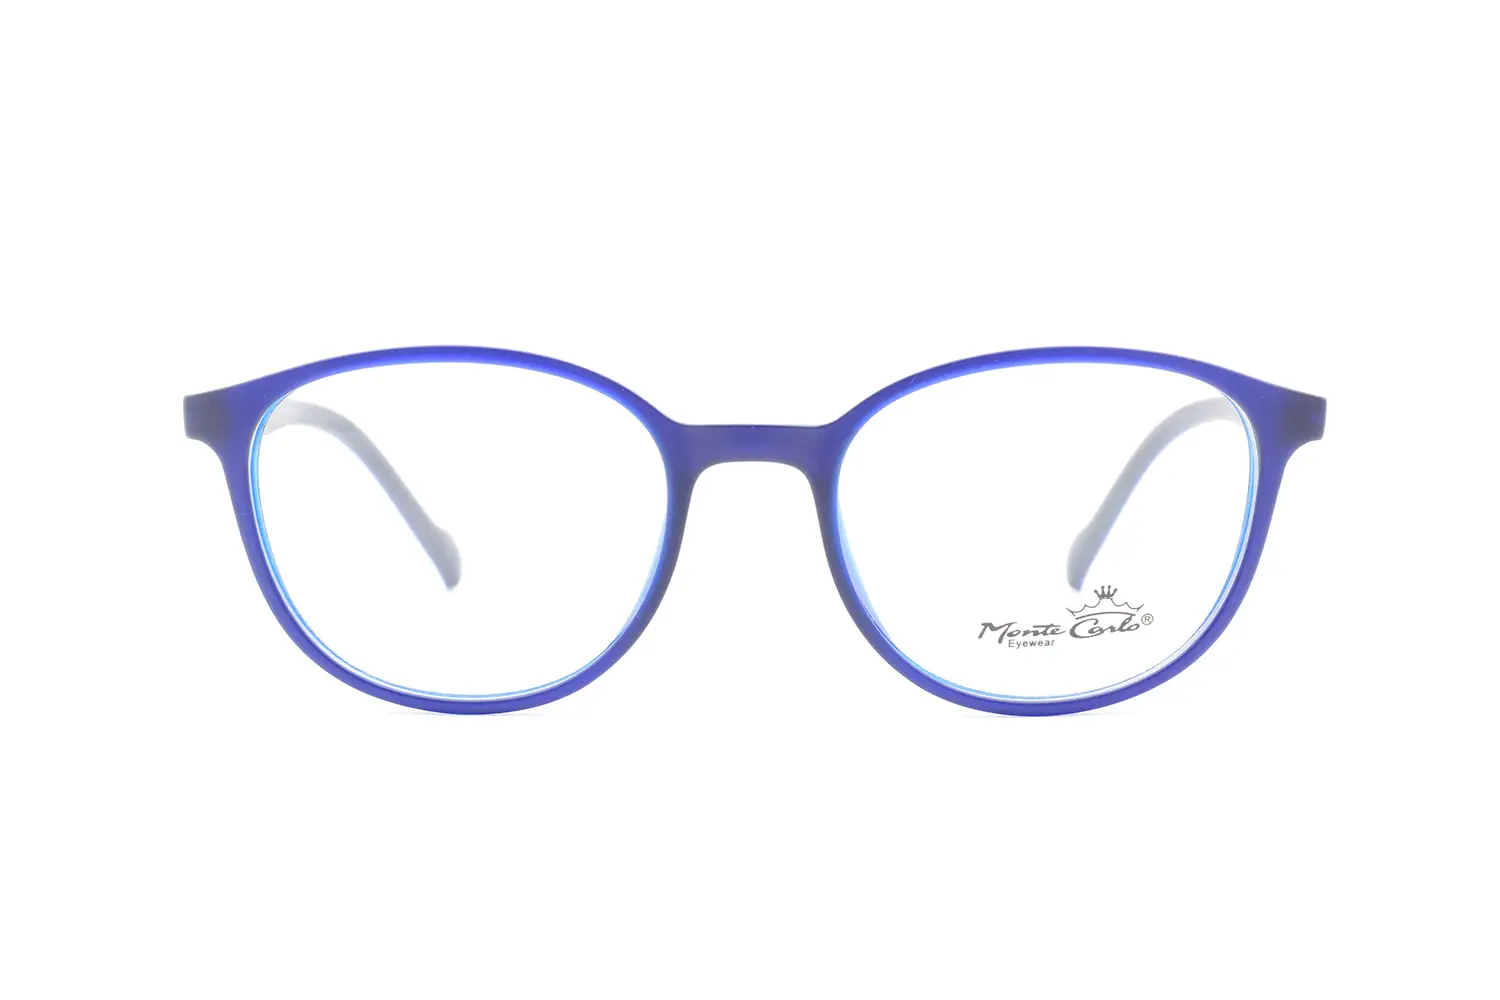 قیمت عینک طبی Monte carlo mz15-18 c04